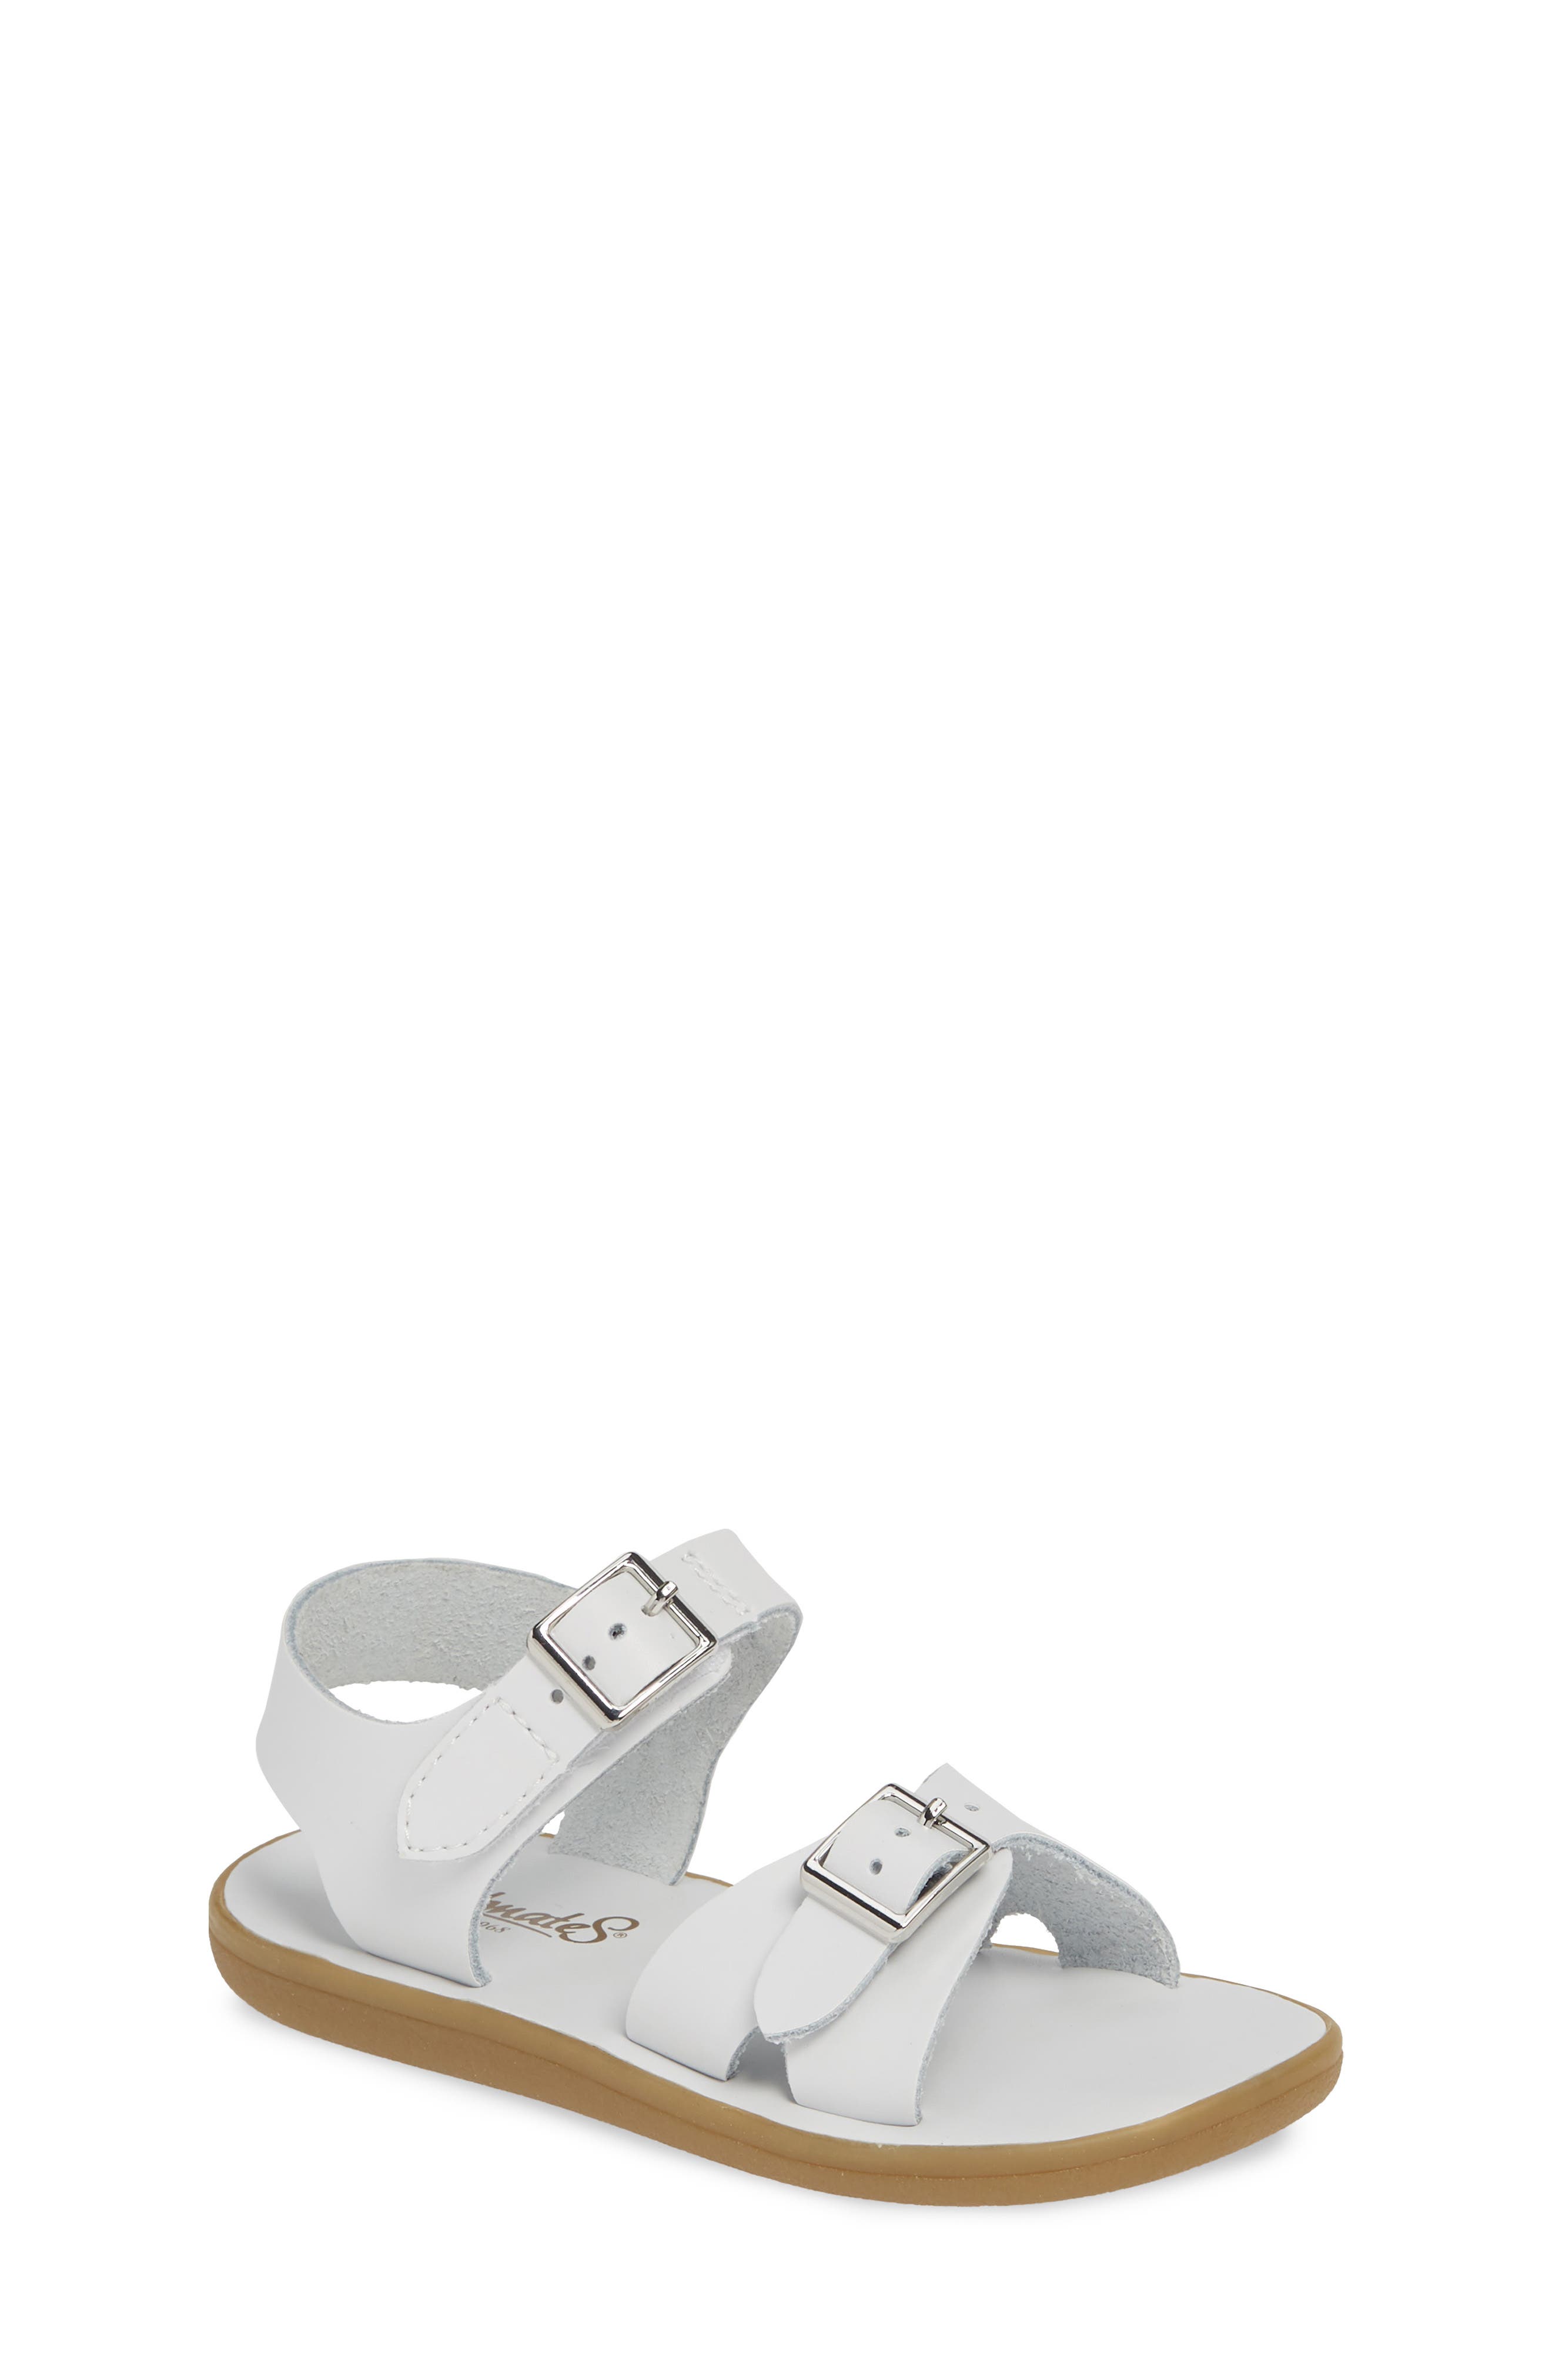 nordstrom white sandals